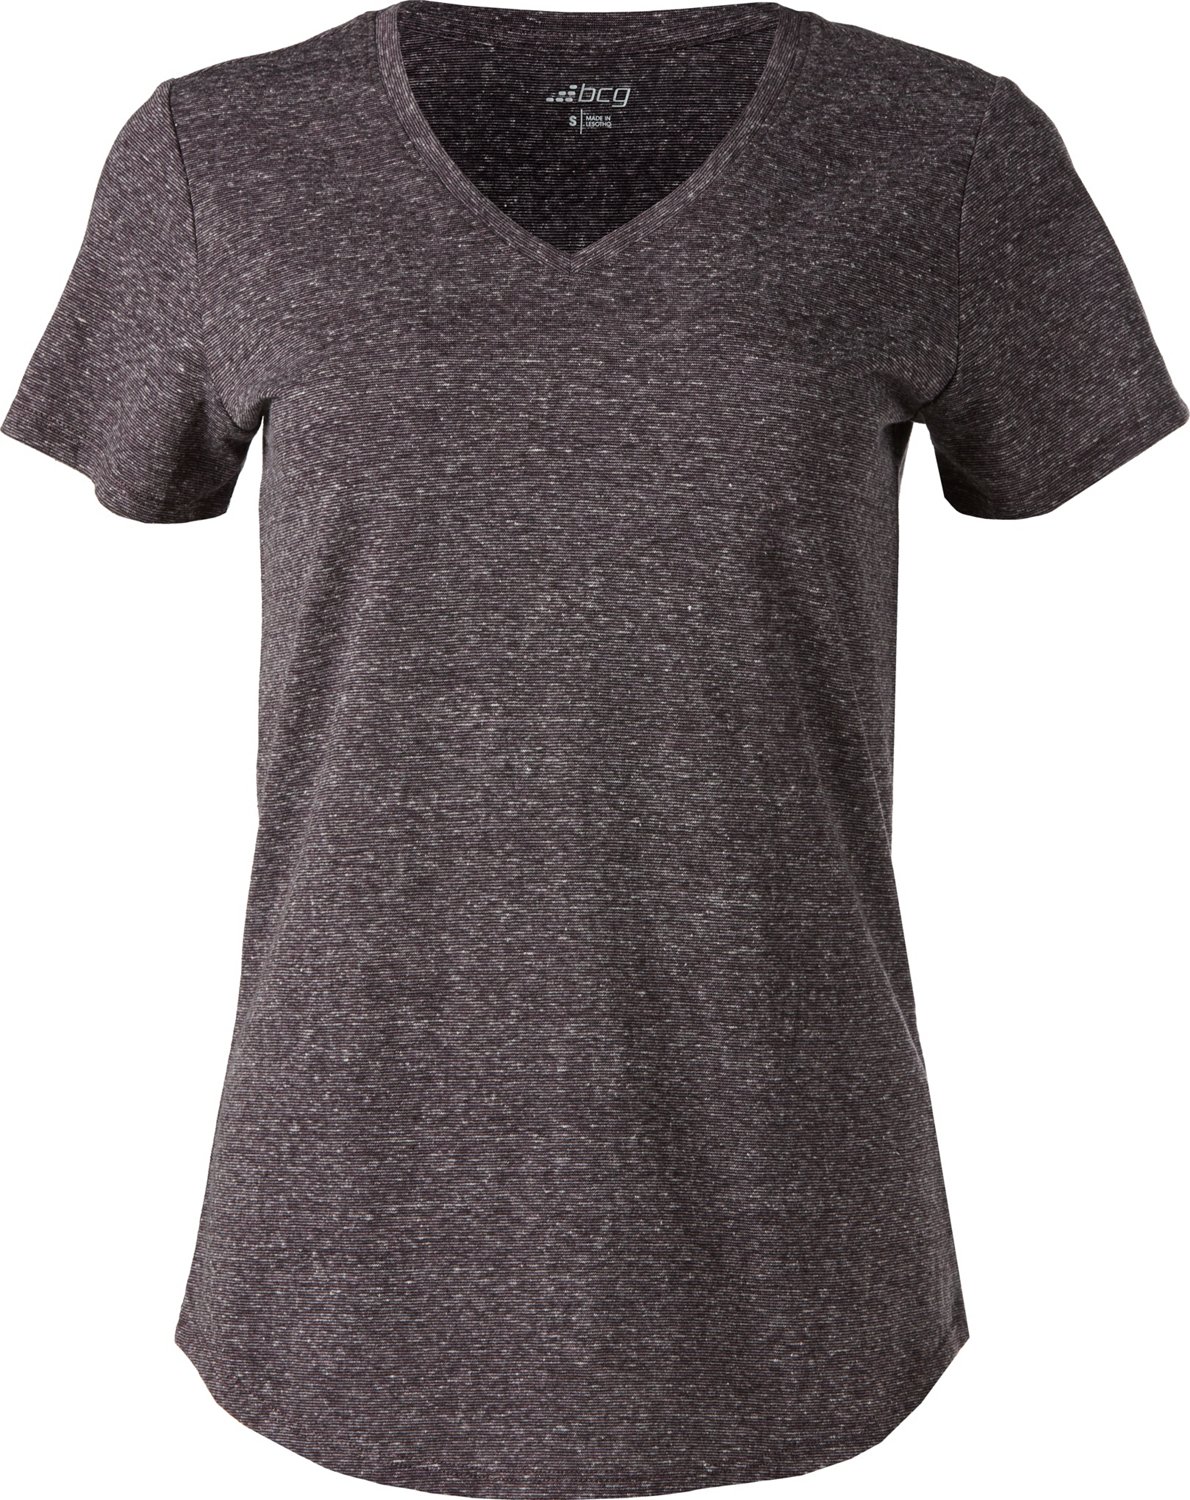 BCG Women's Texture Signature Short Sleeve T-shirt | Academy